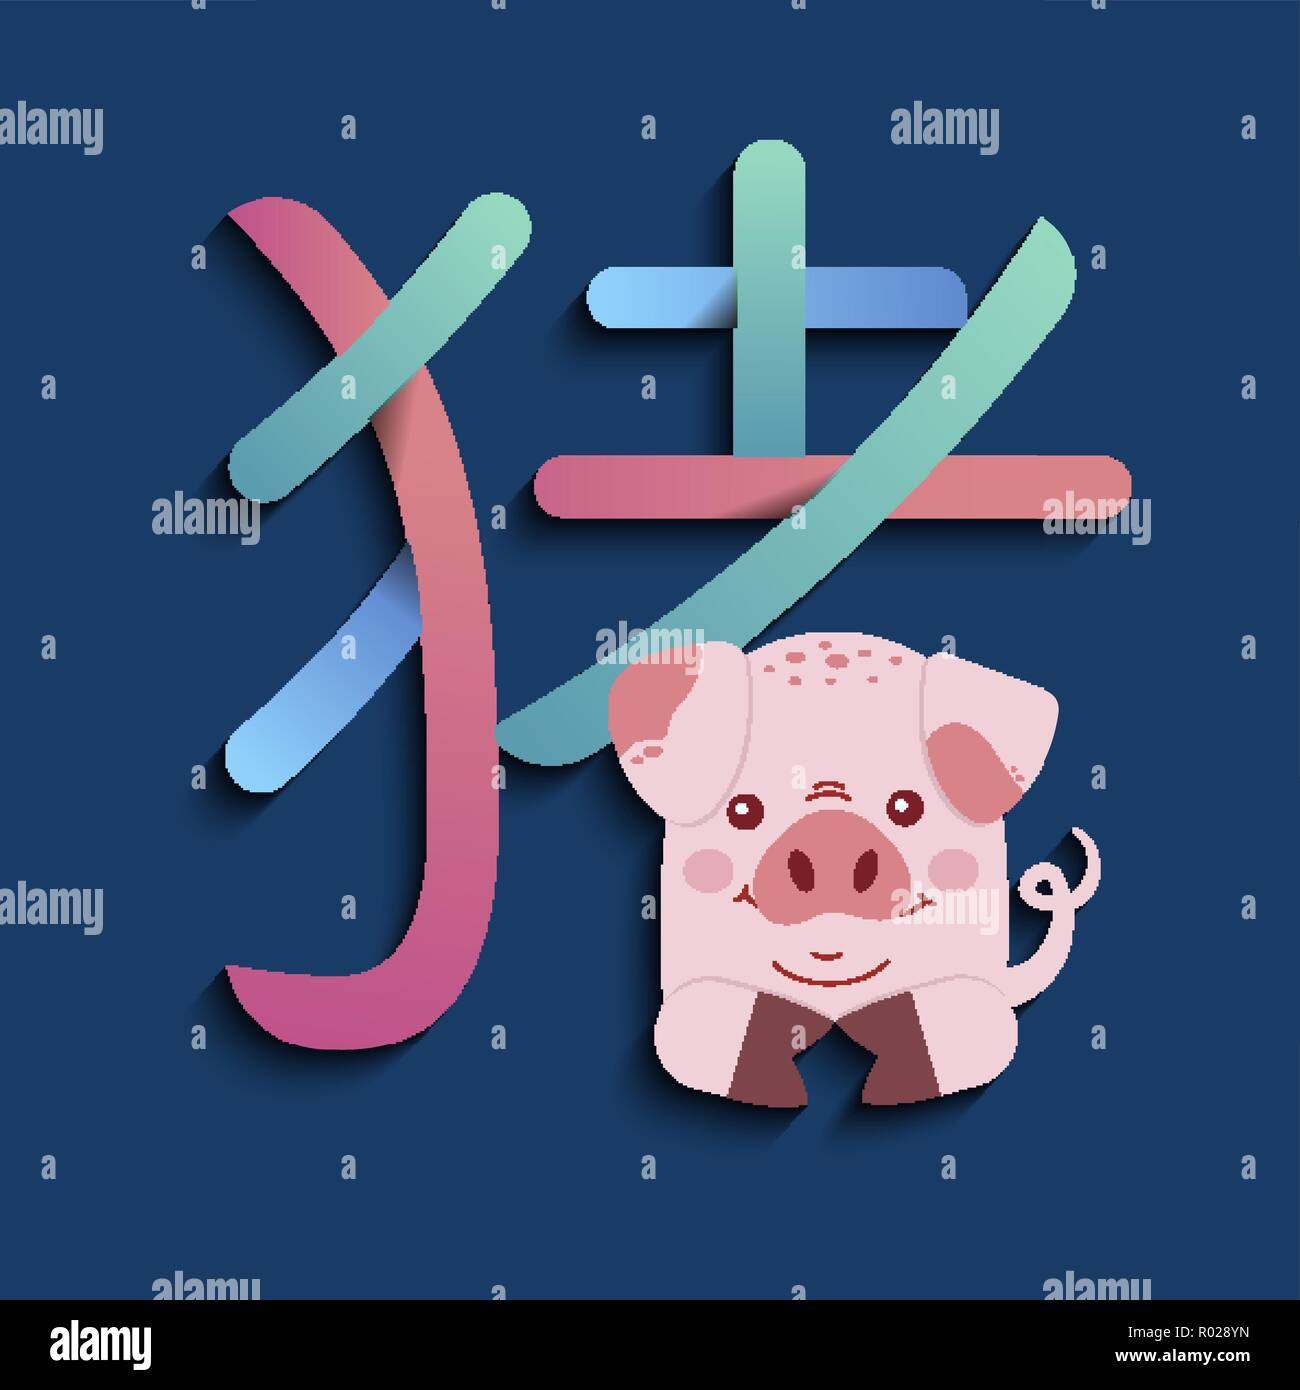 Anno Nuovo Cinese del maiale 2019 greeting card illustrazione con divertenti cartoon piggy e semplice calligrafia asiatica. Illustrazione Vettoriale